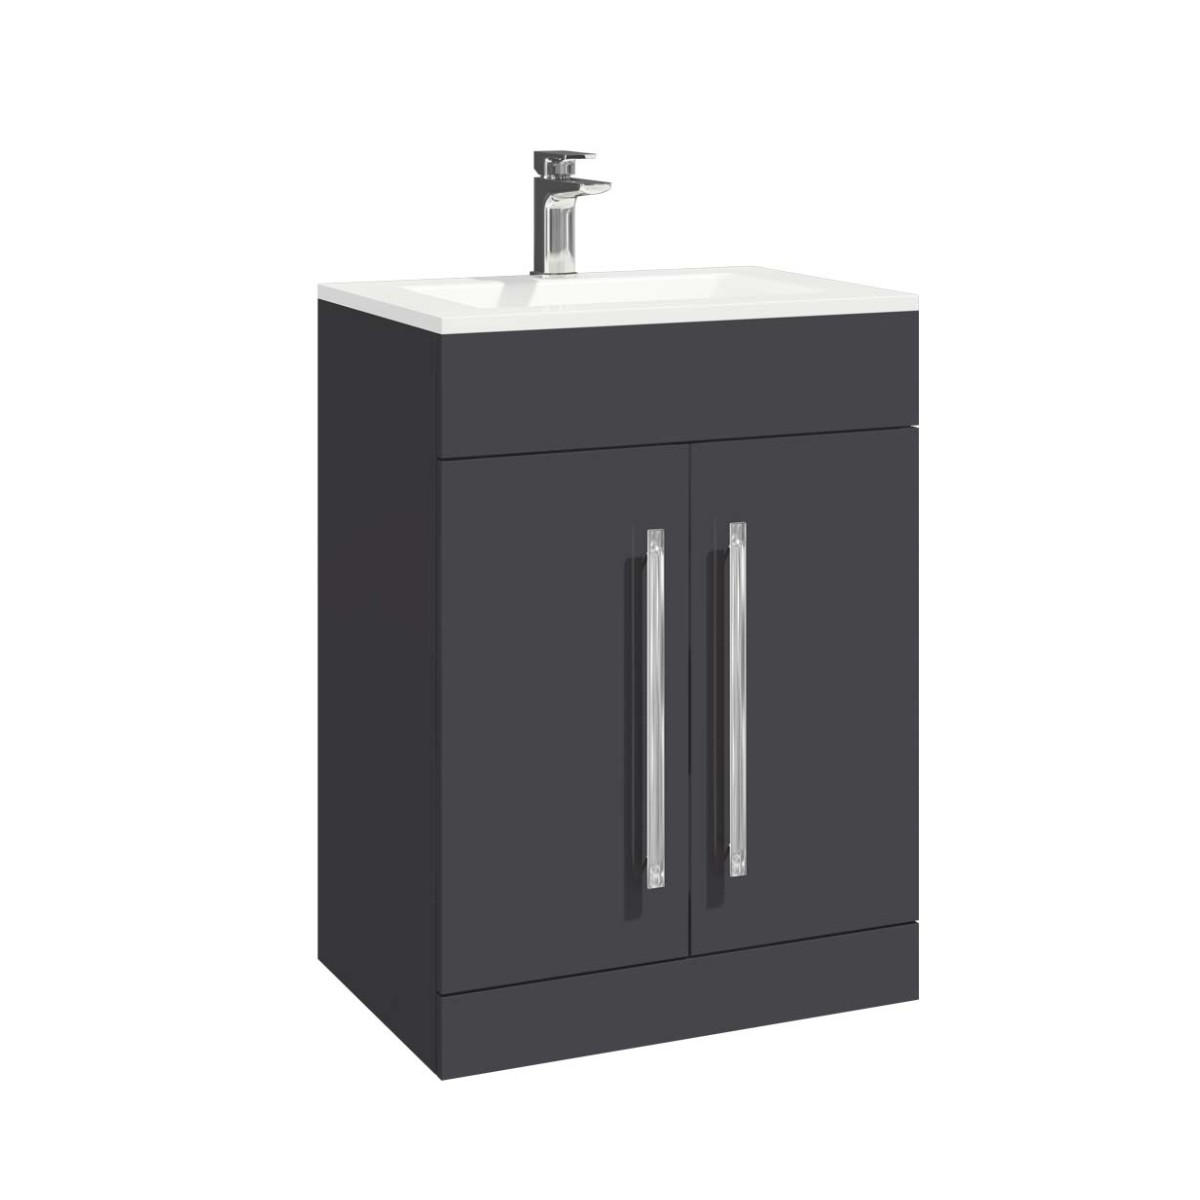 Lili 600 dark Grey bathroom with sink